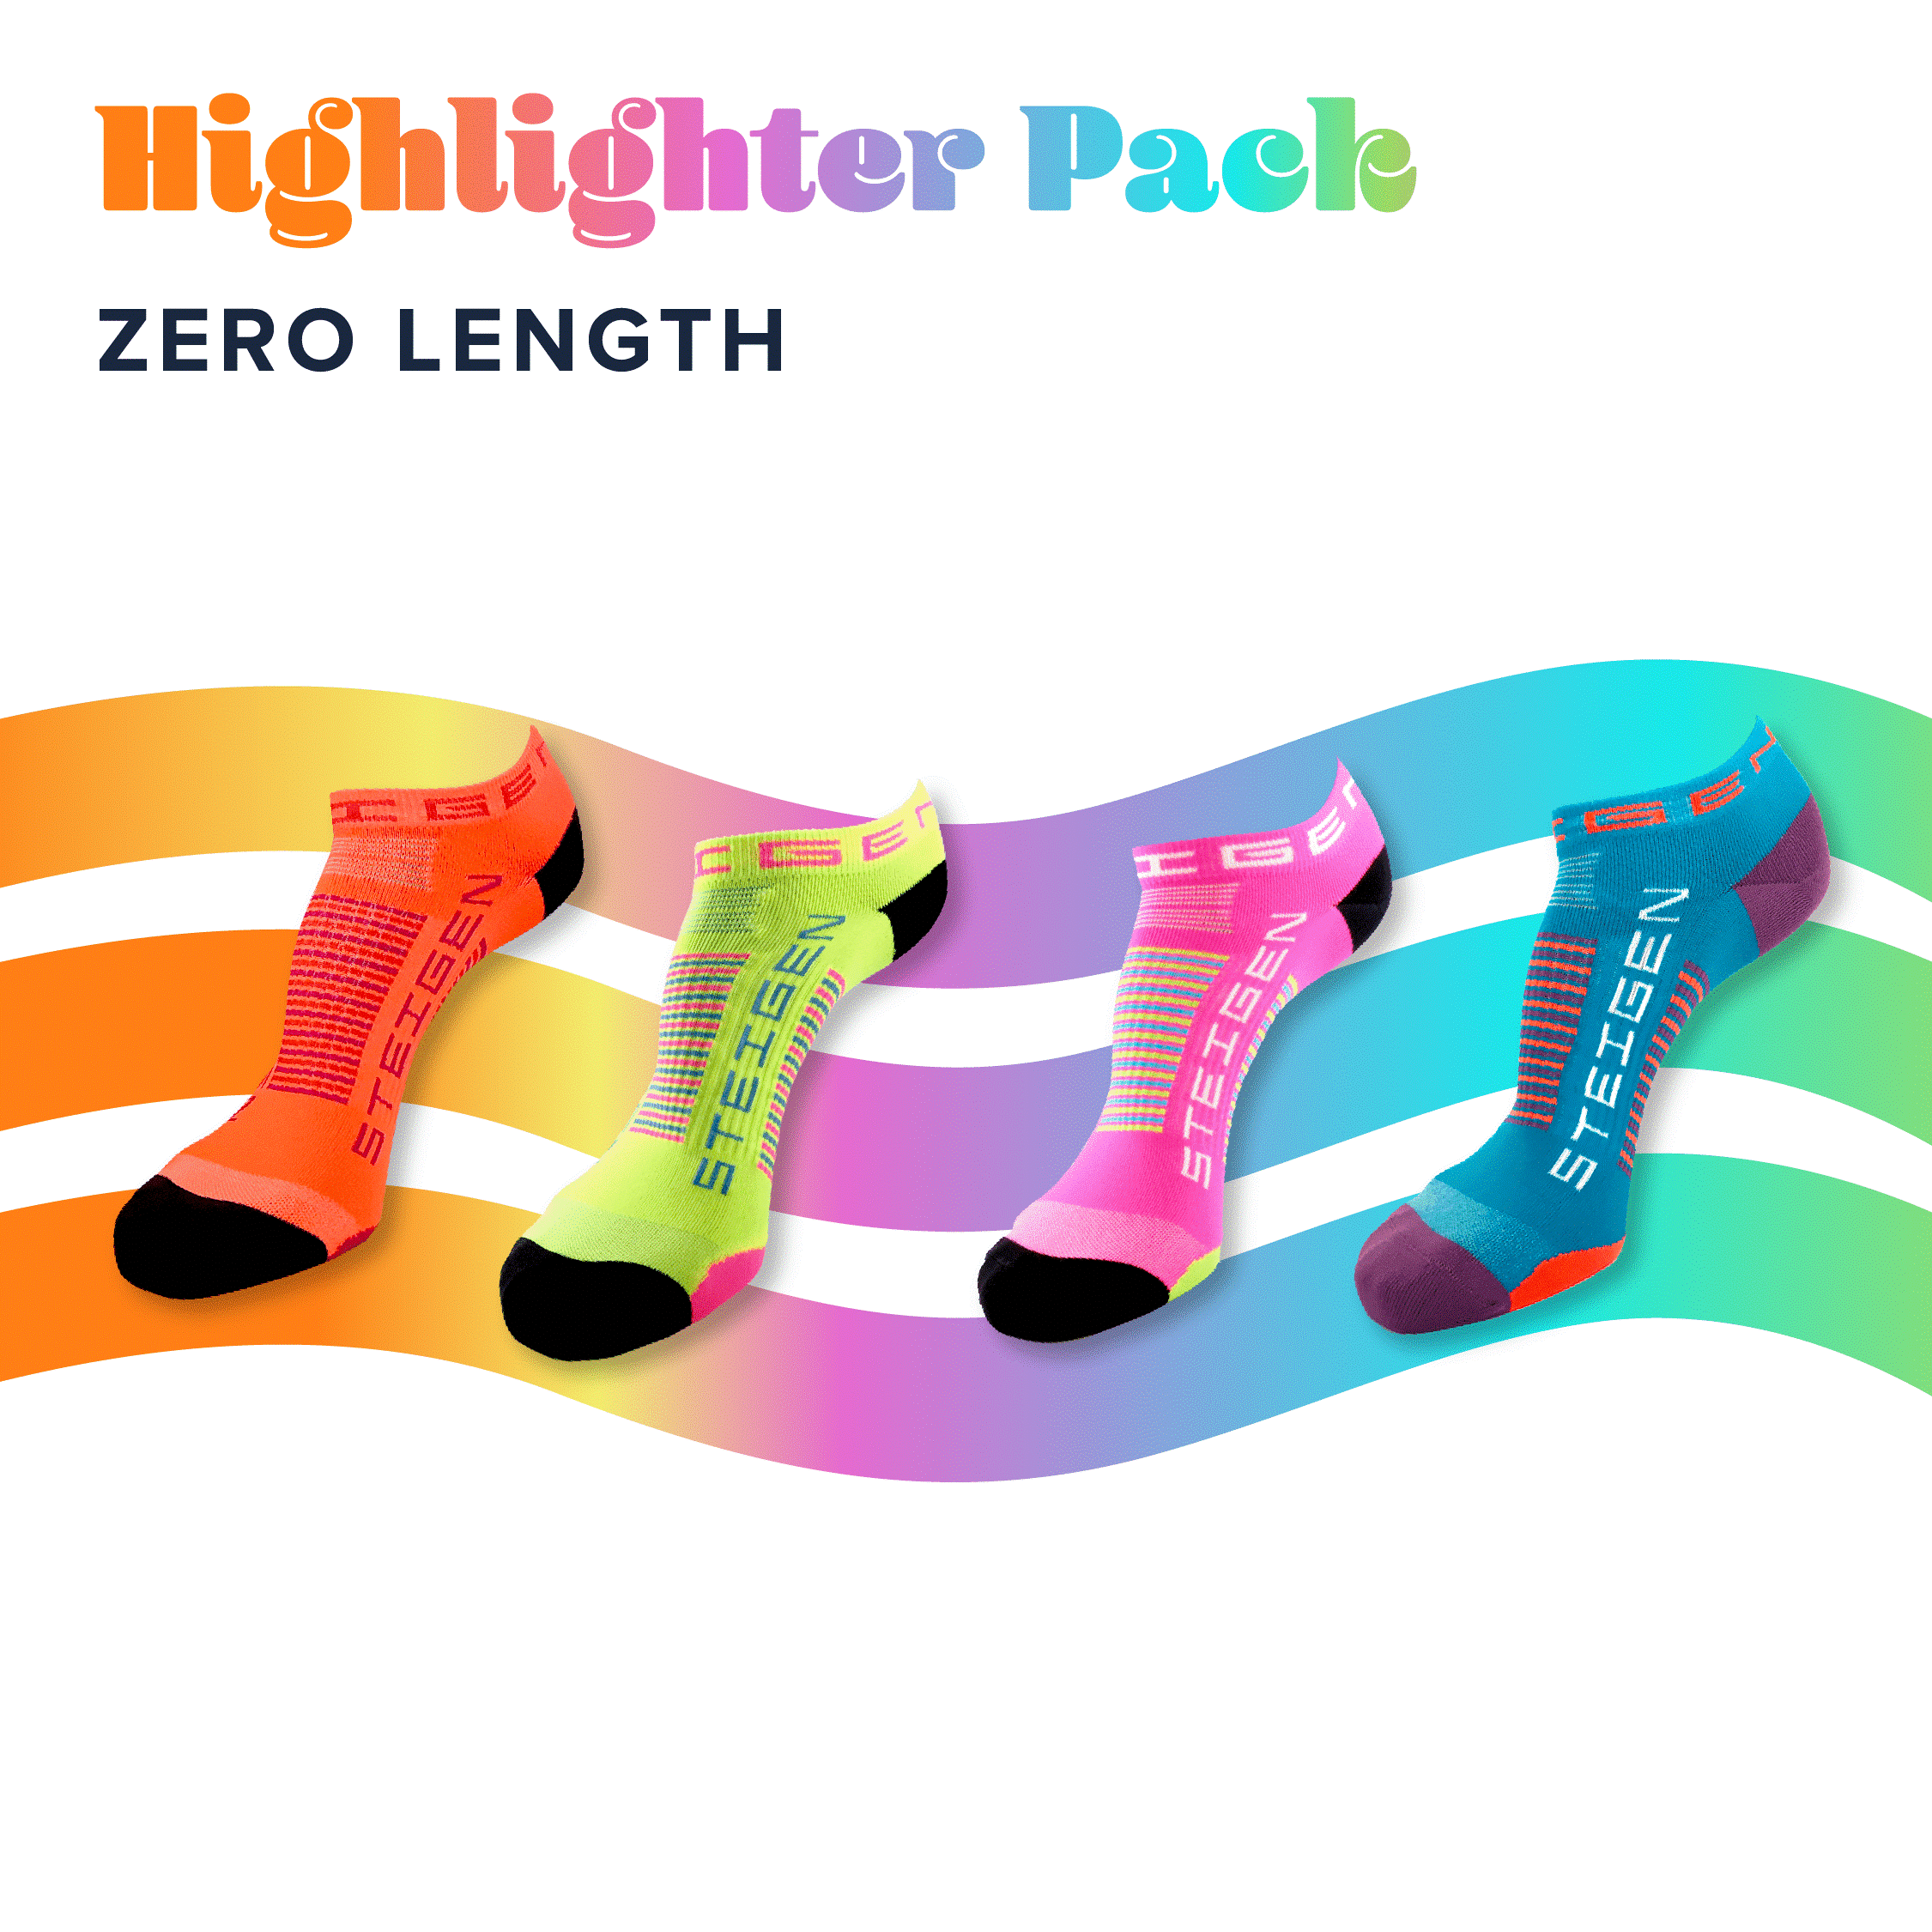 Highlighter Pack Zero Length